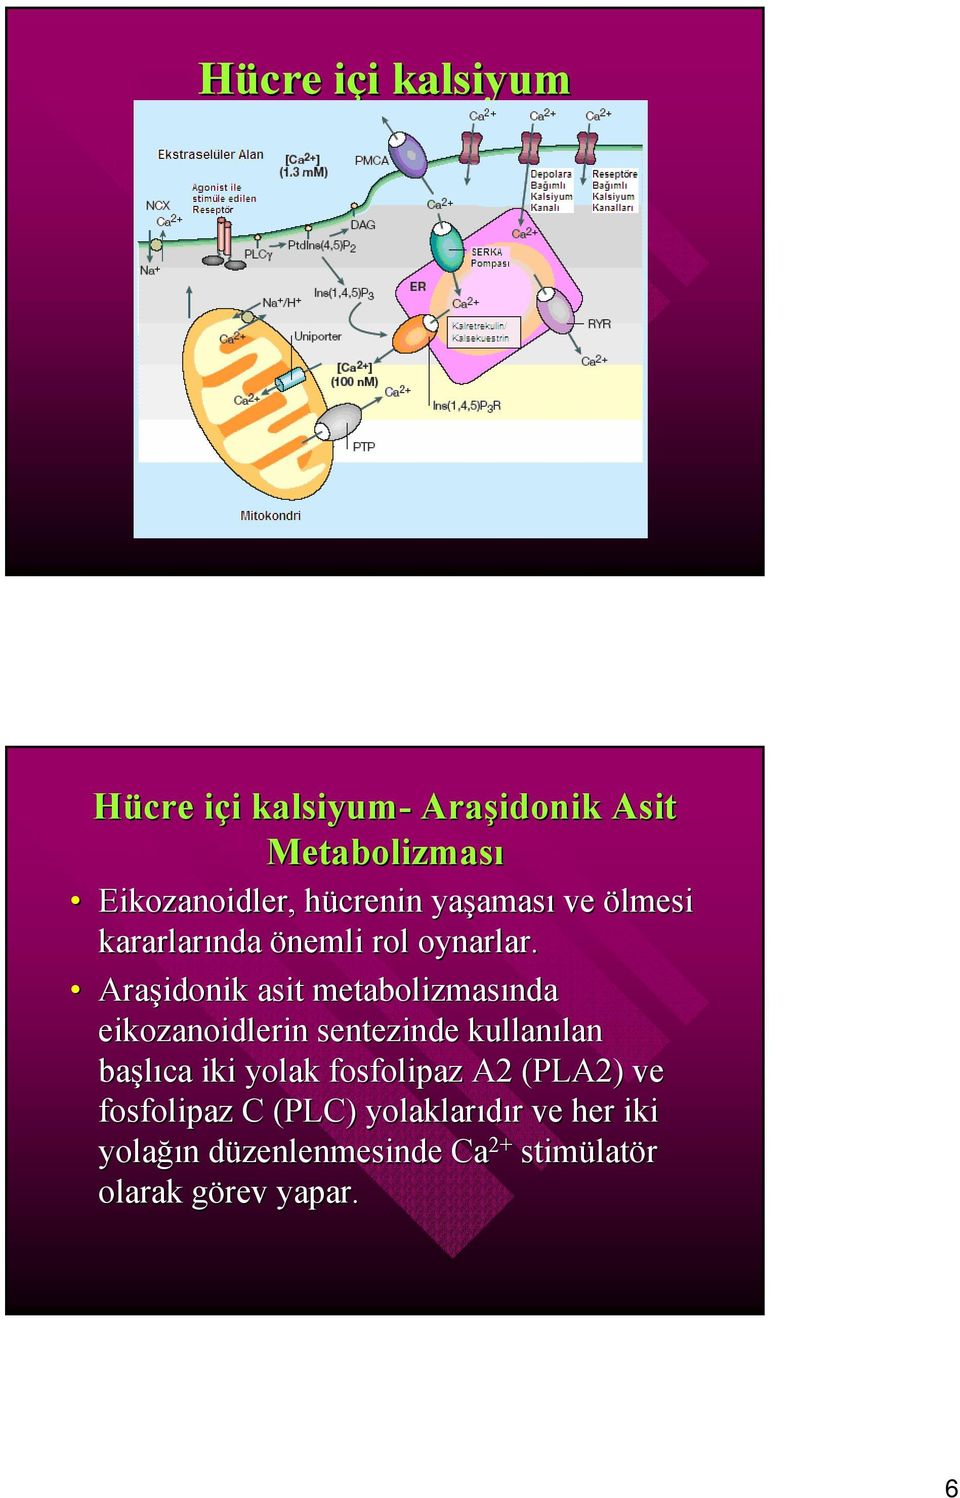 Araşidonik asit metabolizmasında eikozanoidlerin sentezinde kullanılan başlıca iki yolak